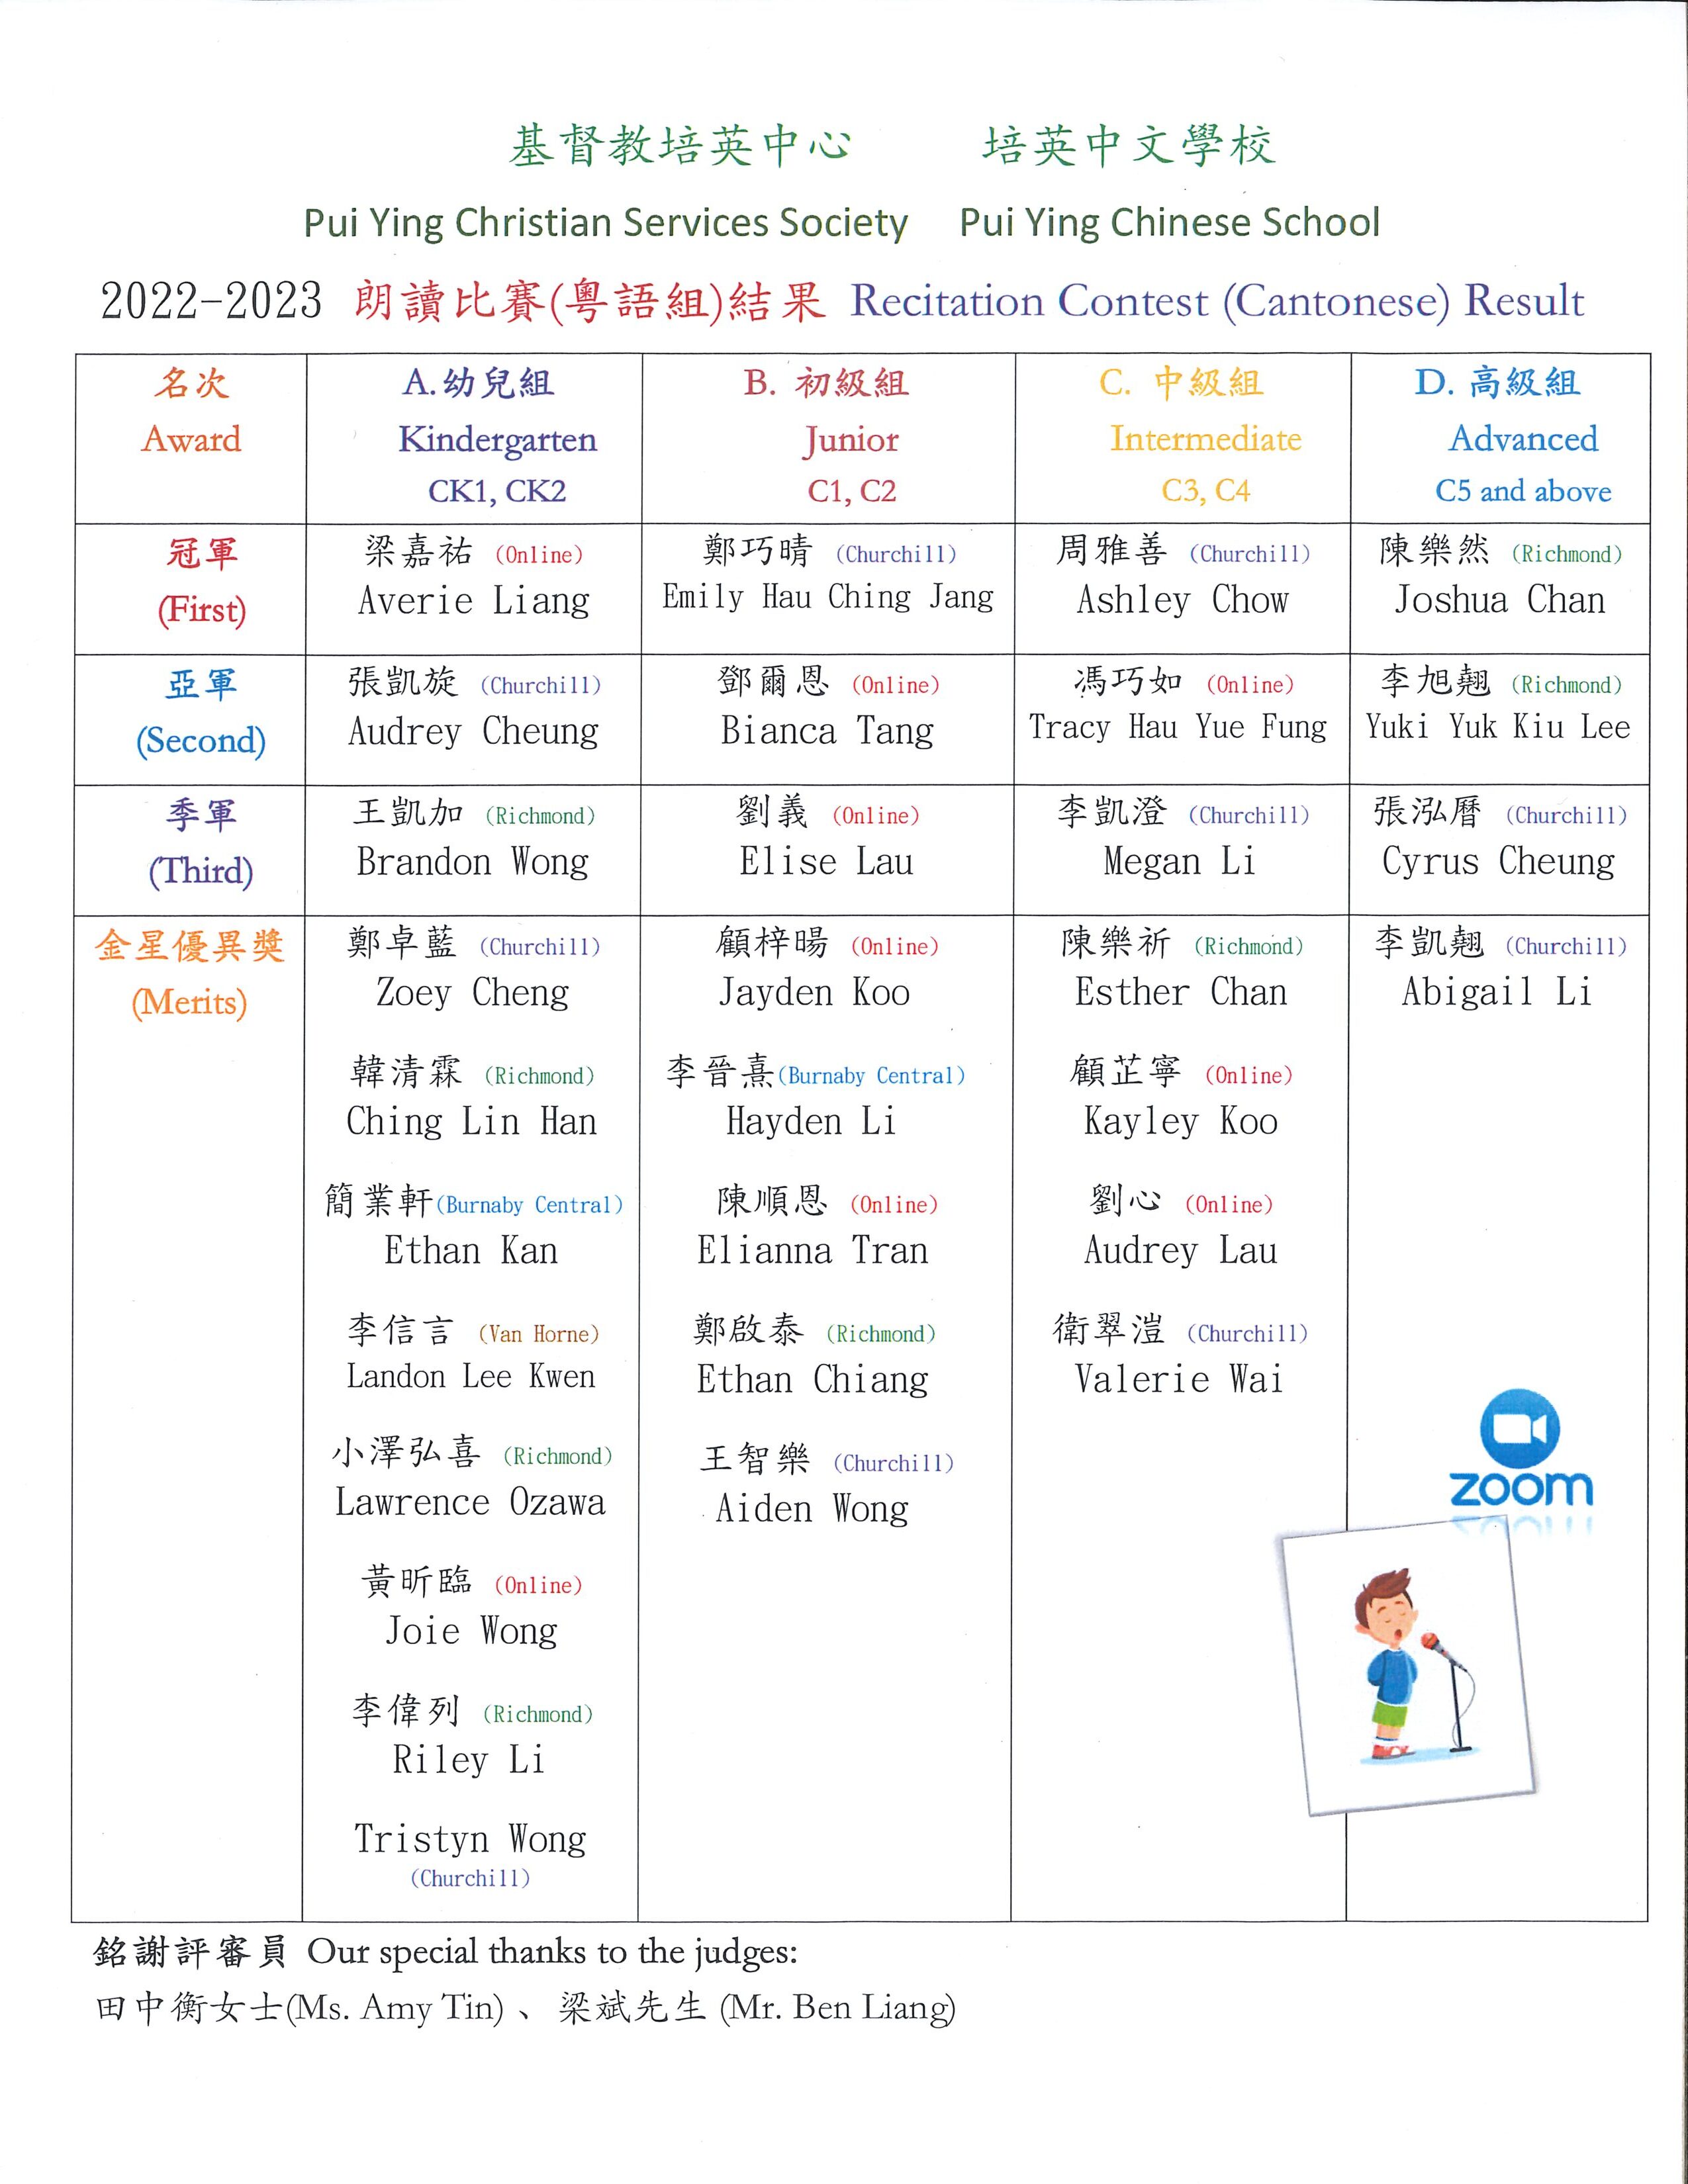 reciation result Cantonese